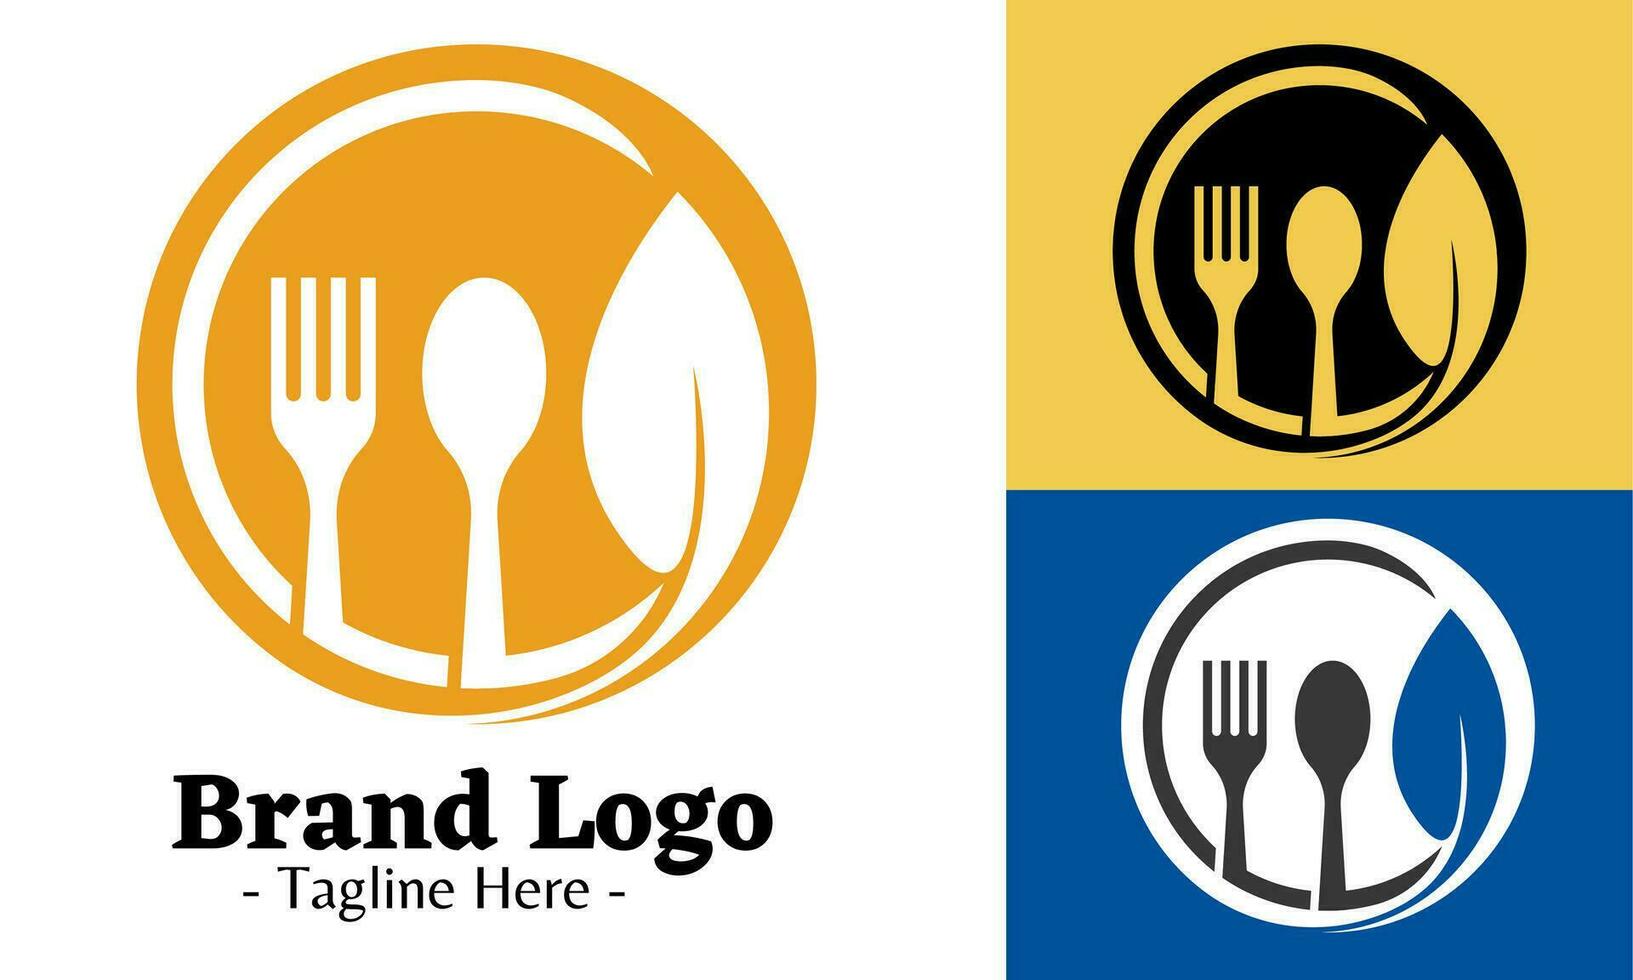 Restaurant Logo Design Vektor, modern Logos Konzept vektor